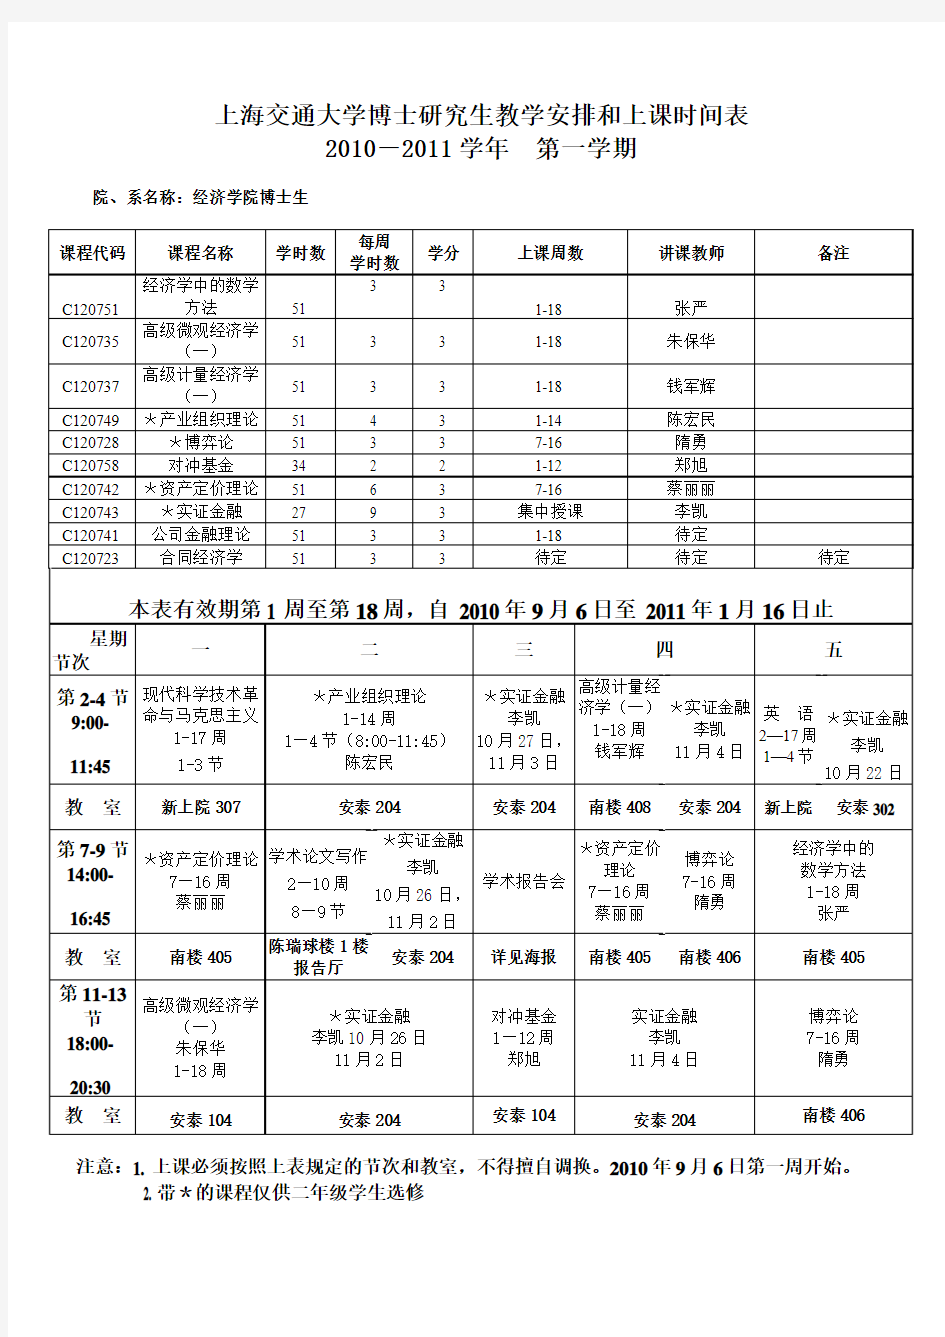 上海交通大学博士研究生教学安排和上课时间表